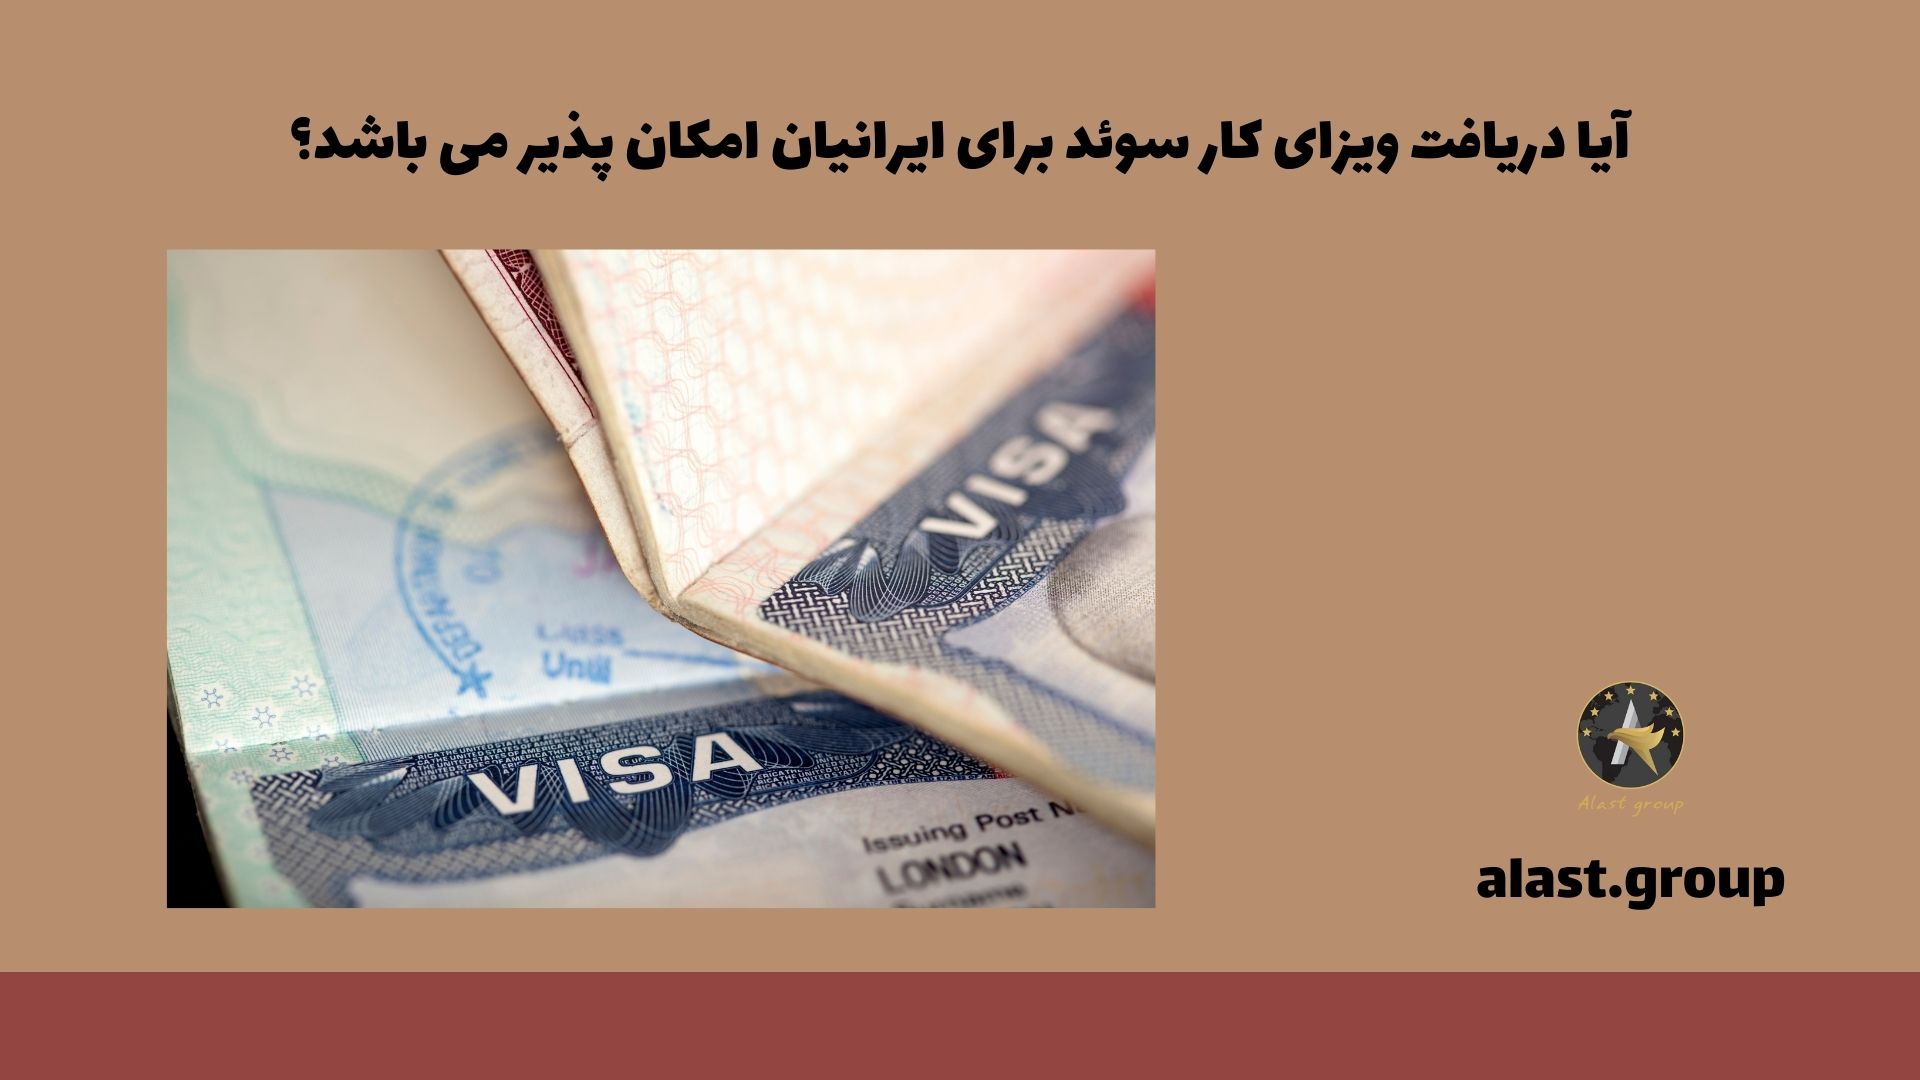 آیا دریافت ویزای کار سوئد برای ایرانیان امکان پذیر می باشد؟